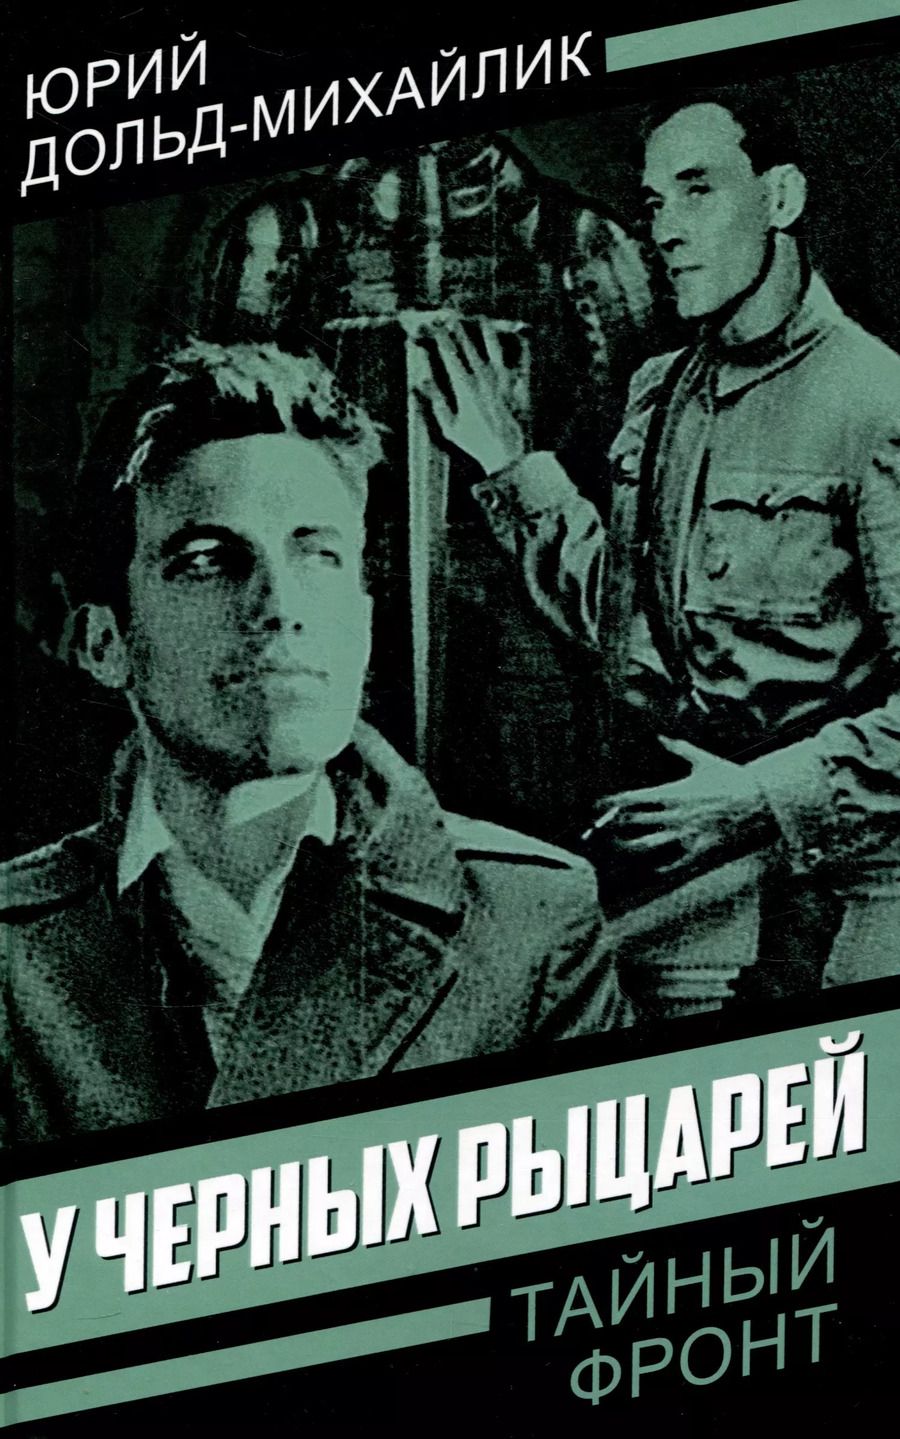 Обложка книги "Юрий Дольд-Михайлик: У черных рыцарей"